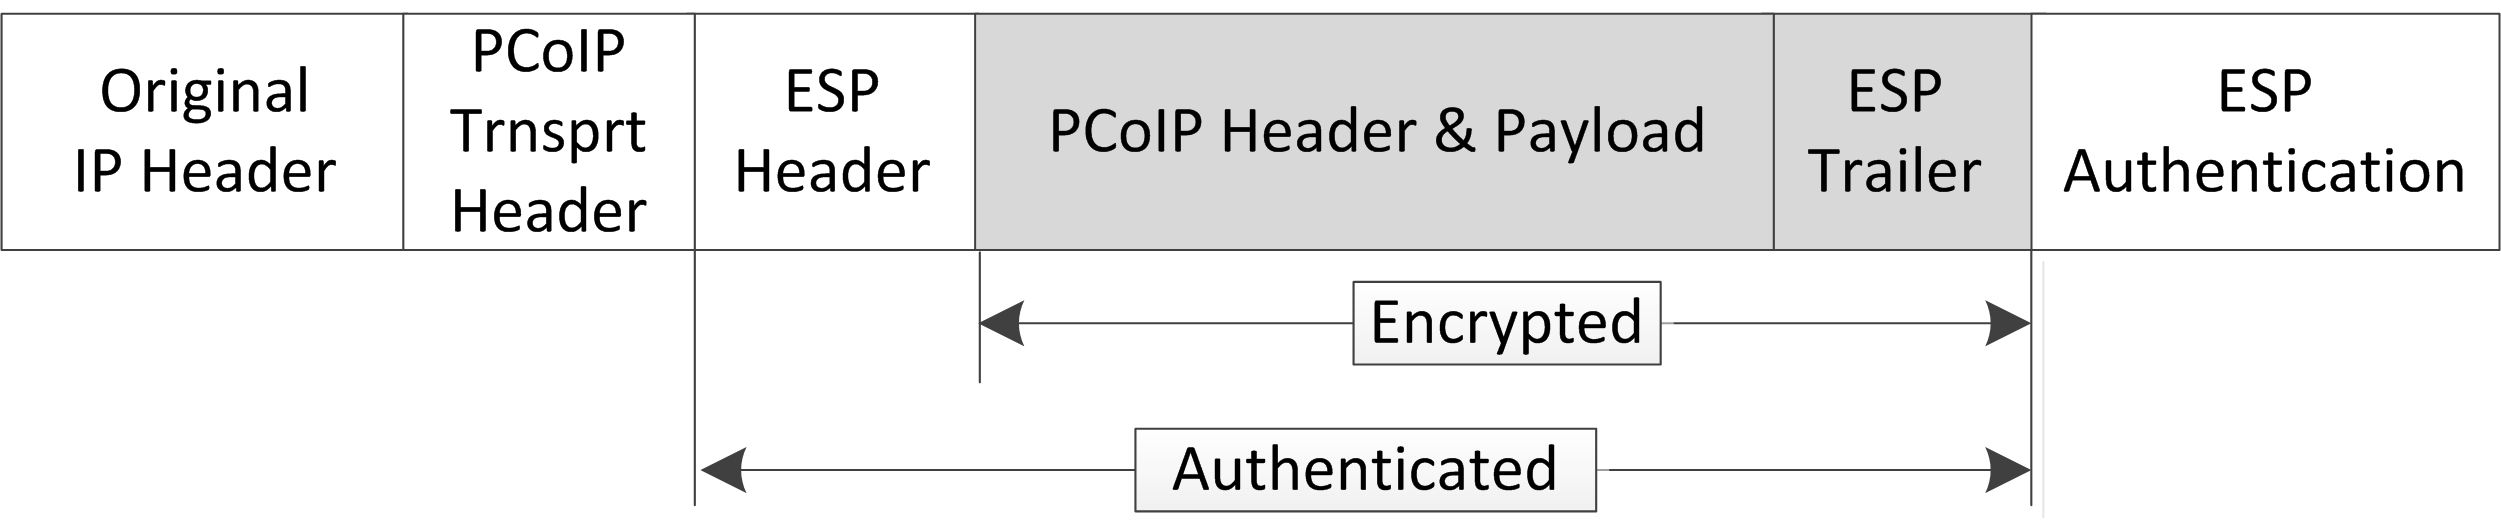 IPSec ESP Packet Format